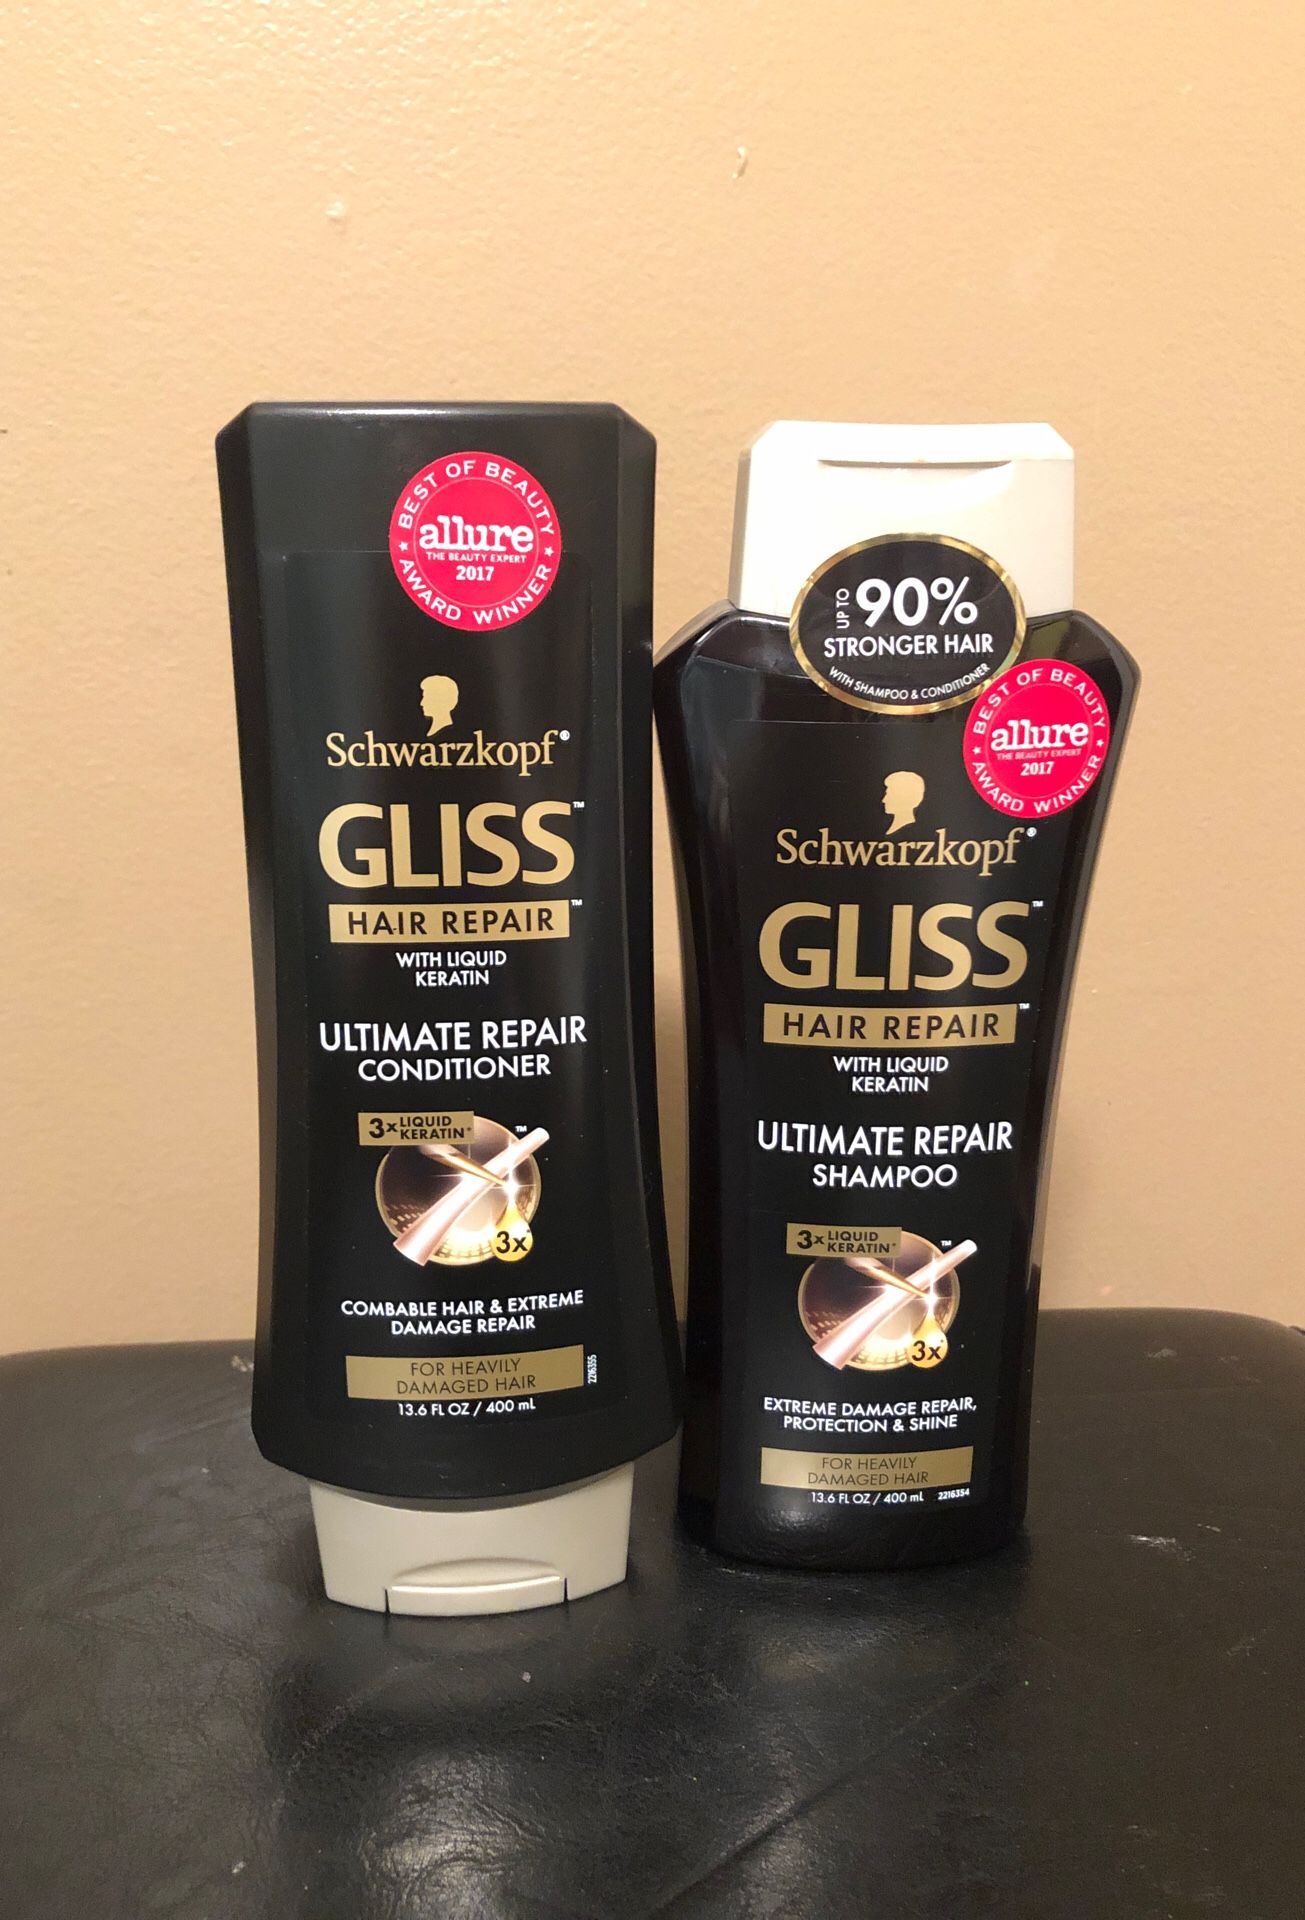 Schwarzkopf Gliss shampoo and conditioner